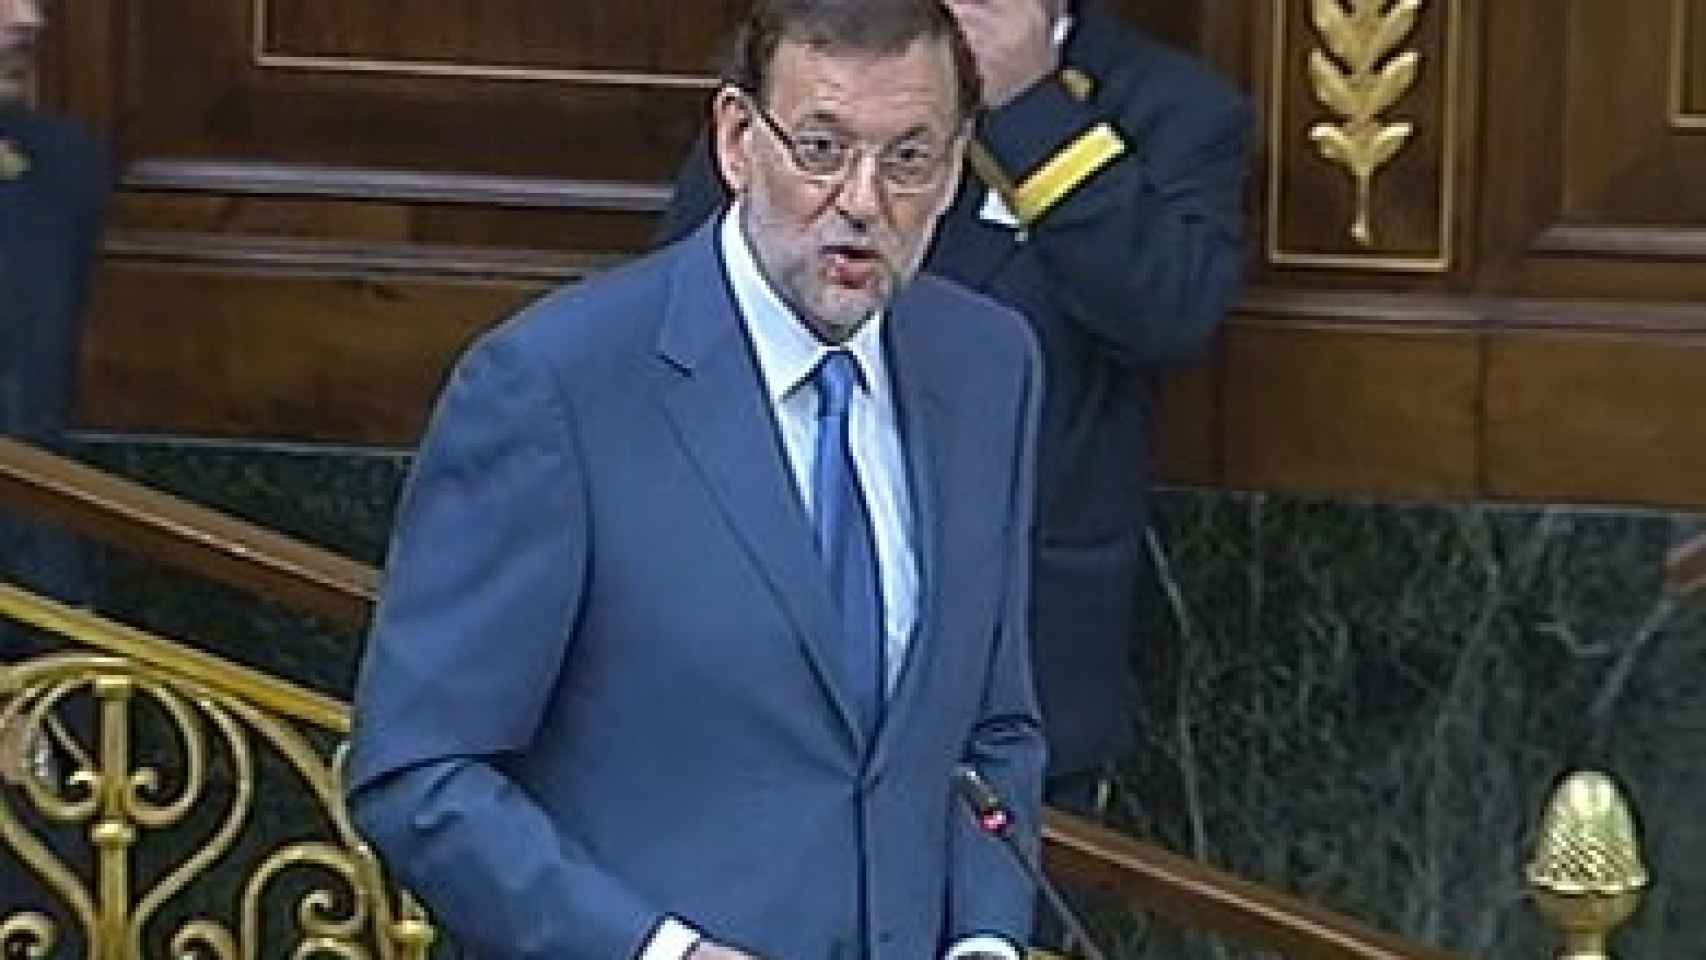 Mariano Rajoy, presidente del Gobierno, en la sesión de control en el Congreso